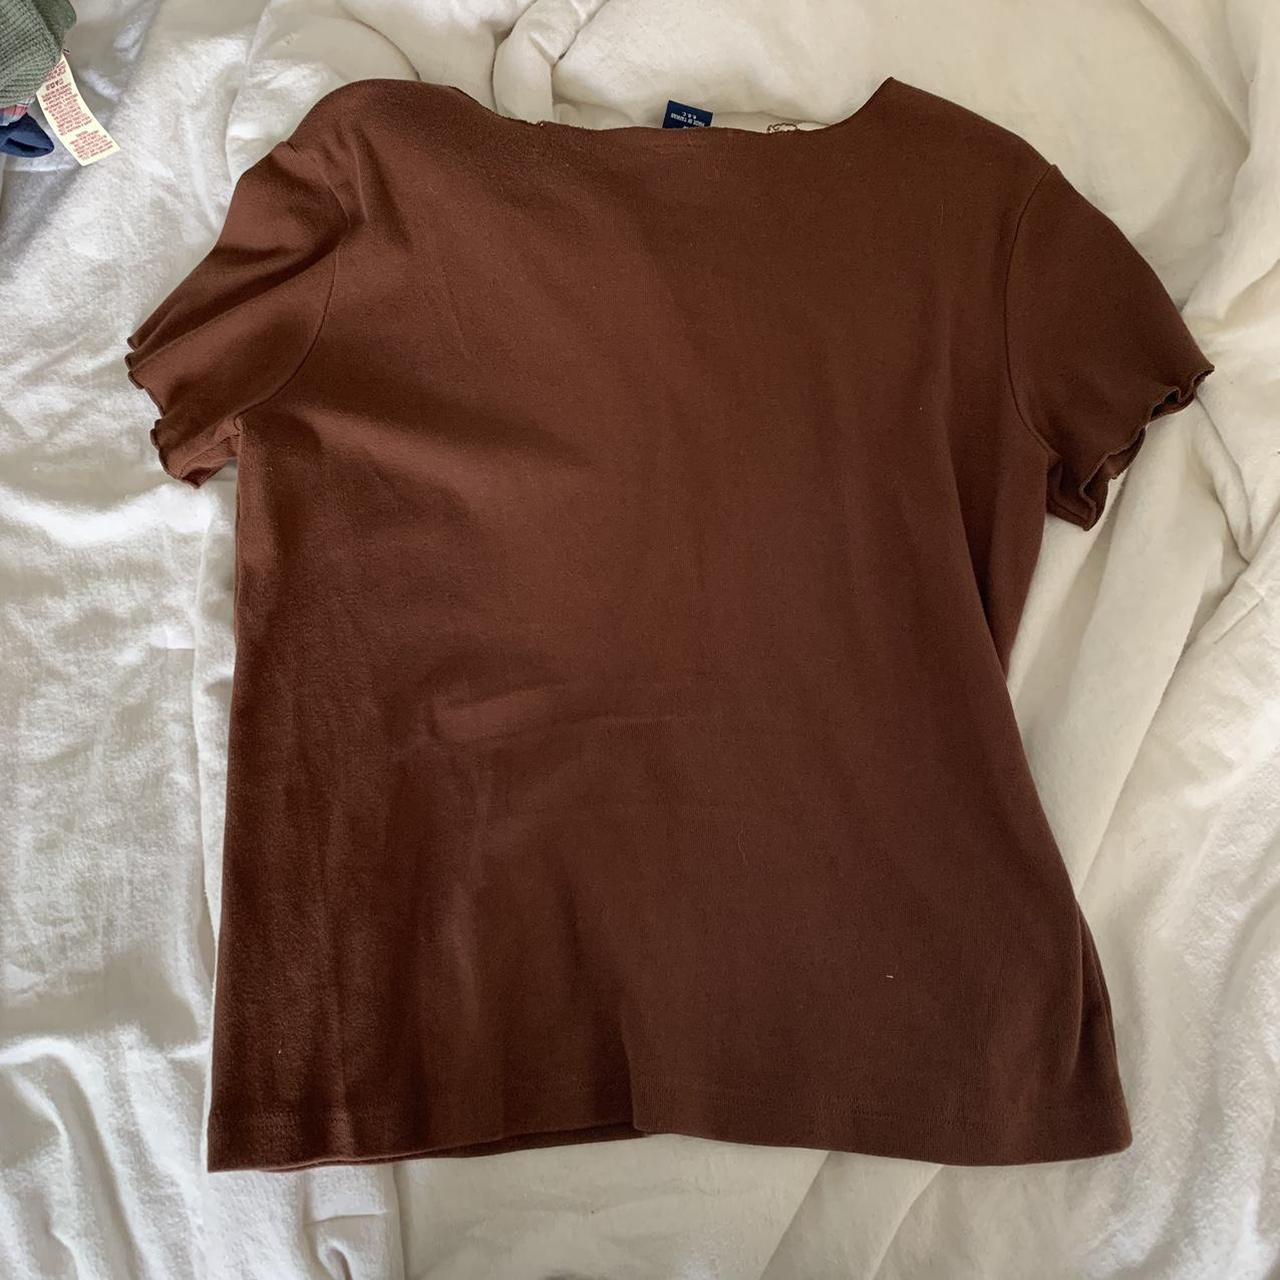 High Sierra Women's Brown Shirt (2)